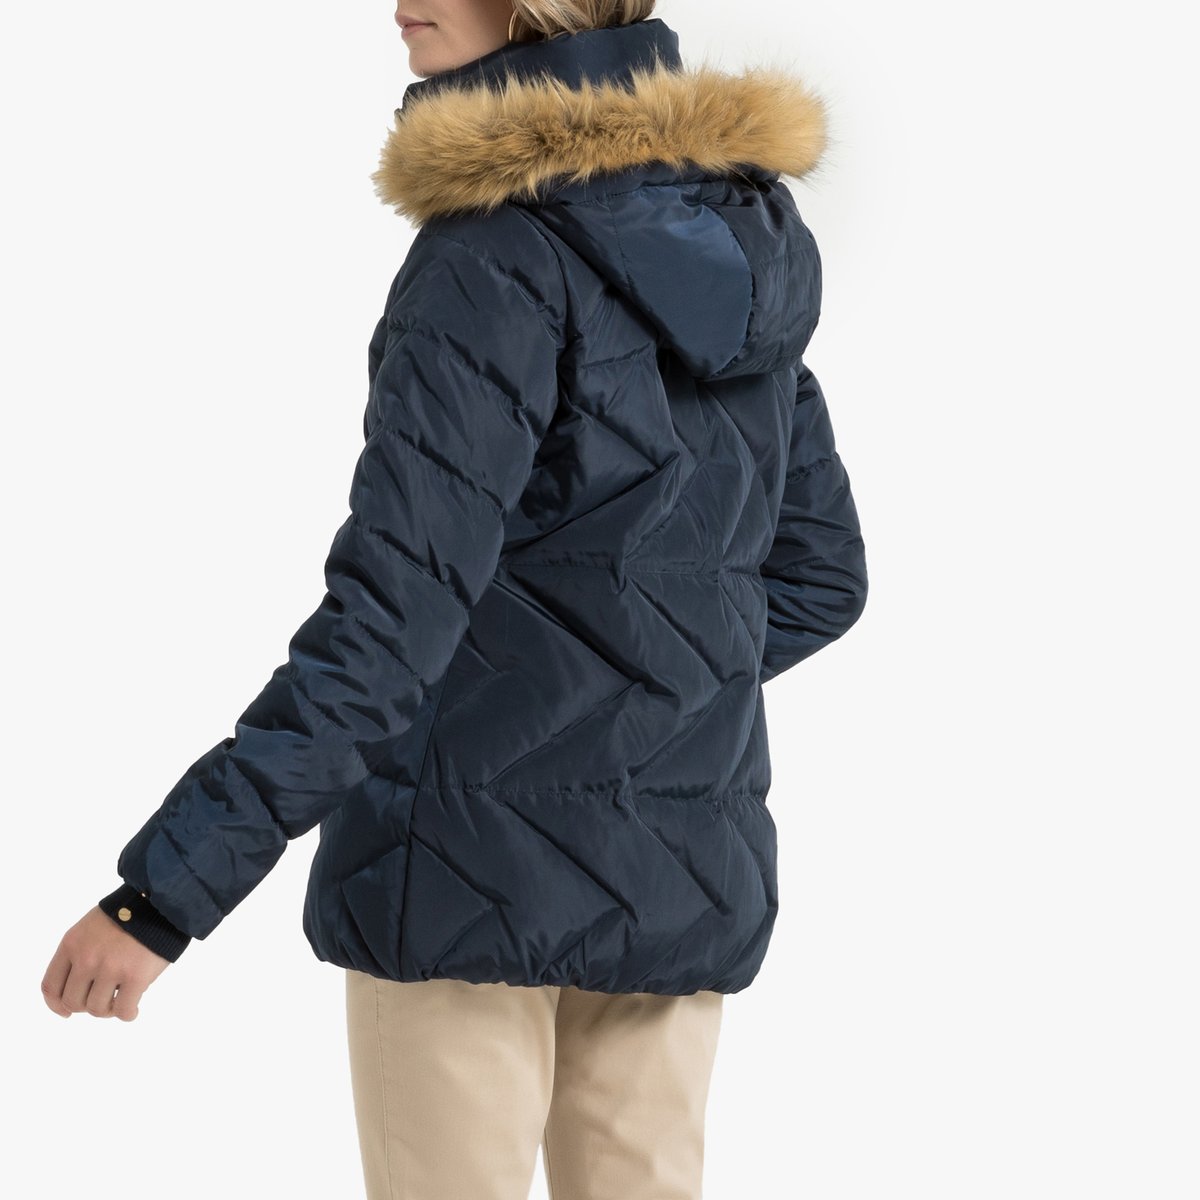 Куртка La Redoute Стеганая с капюшоном зимняя 52 (FR) - 58 (RUS) синий, размер 52 (FR) - 58 (RUS) Стеганая с капюшоном зимняя 52 (FR) - 58 (RUS) синий - фото 4